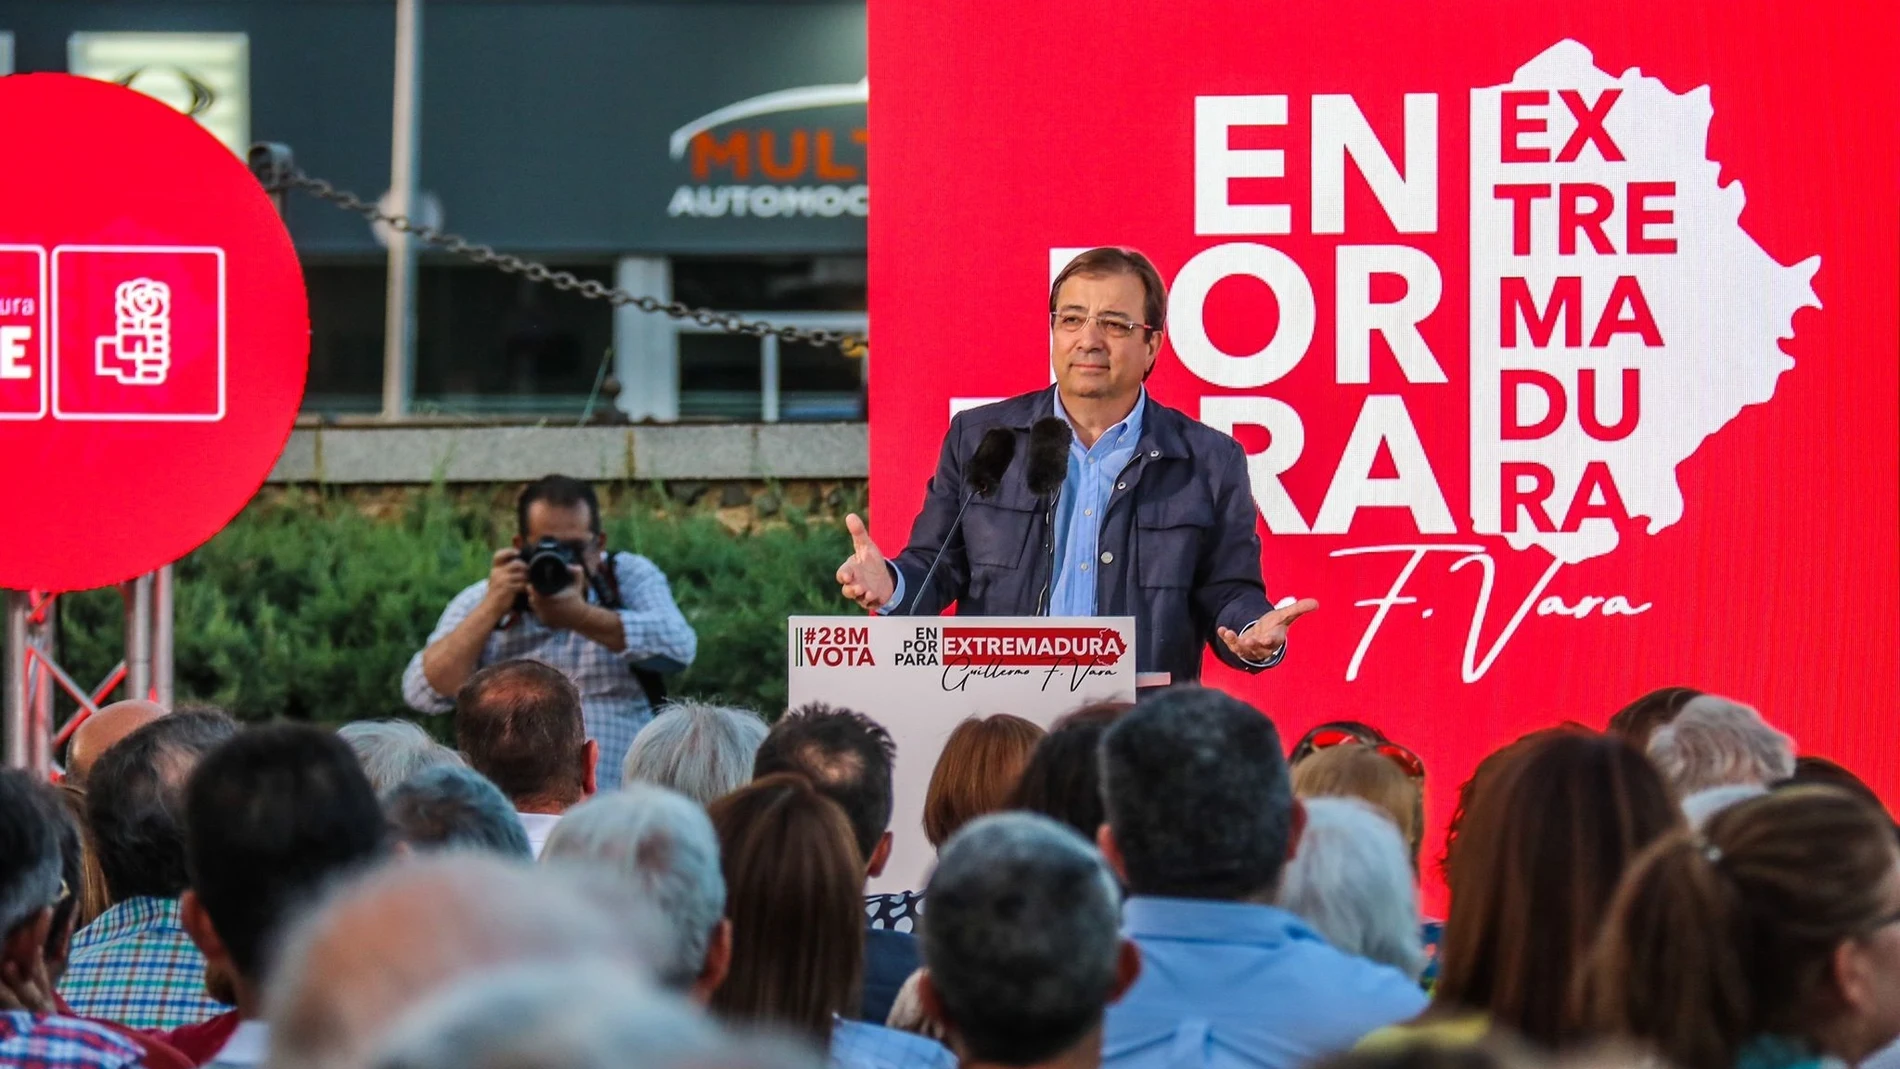 Fotografía de Guillermo Fernández Vara, presidente de la Junta de Extremadura